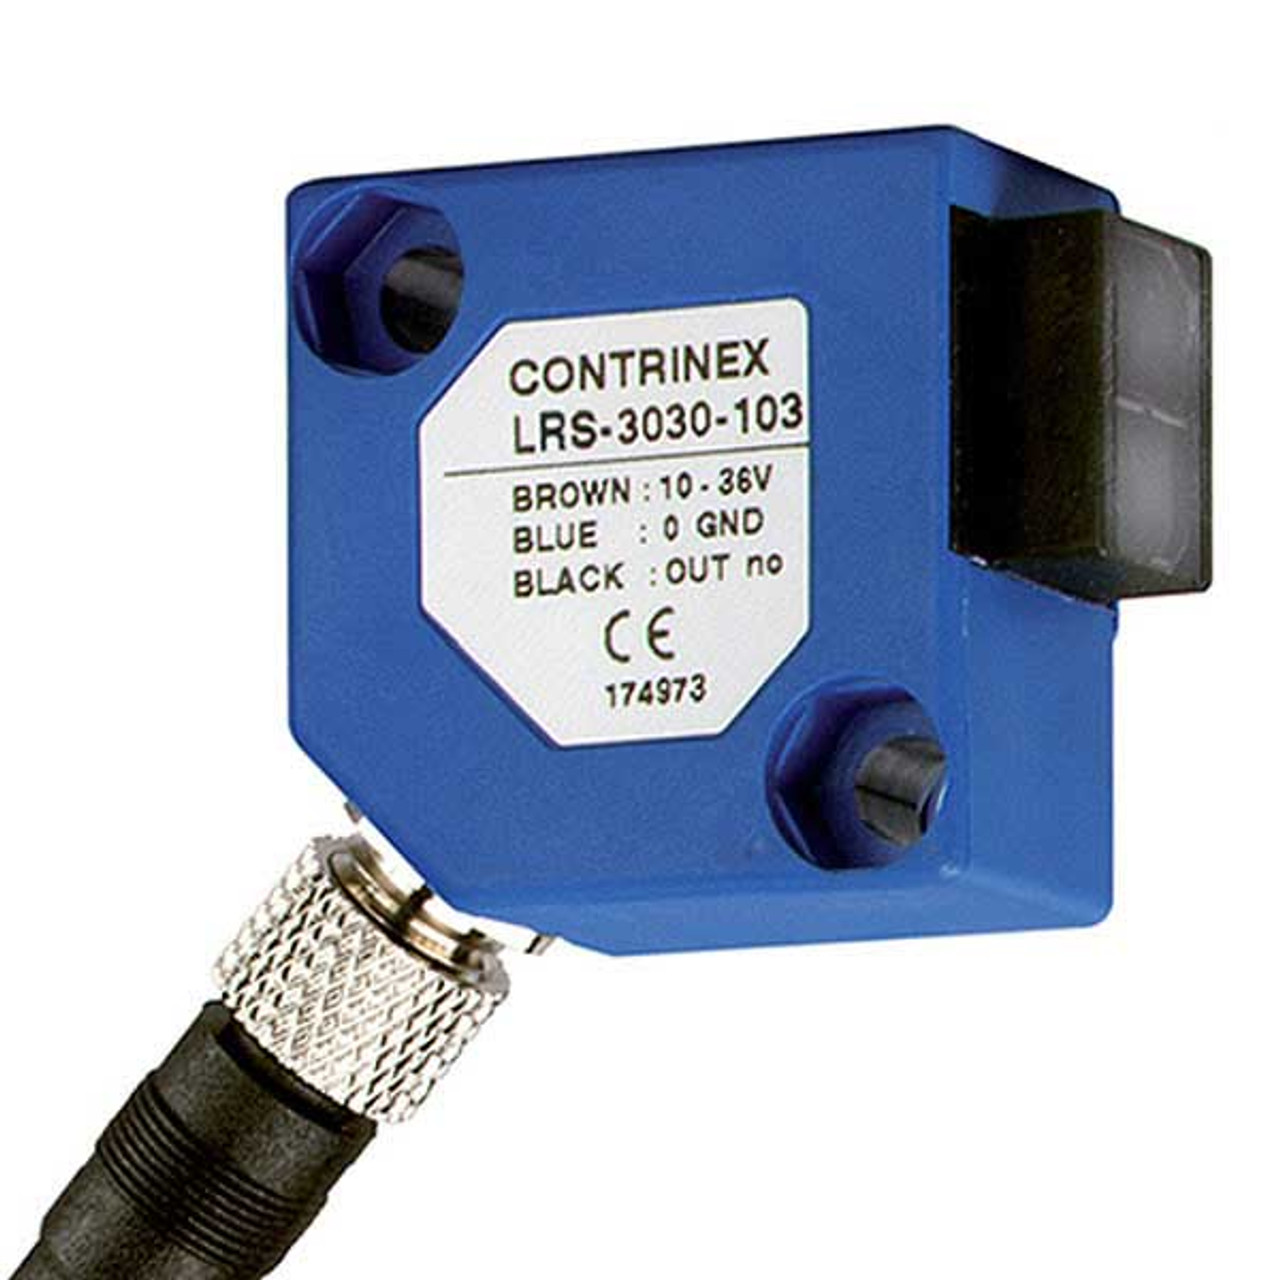 LRS-3030-103 Contrinex